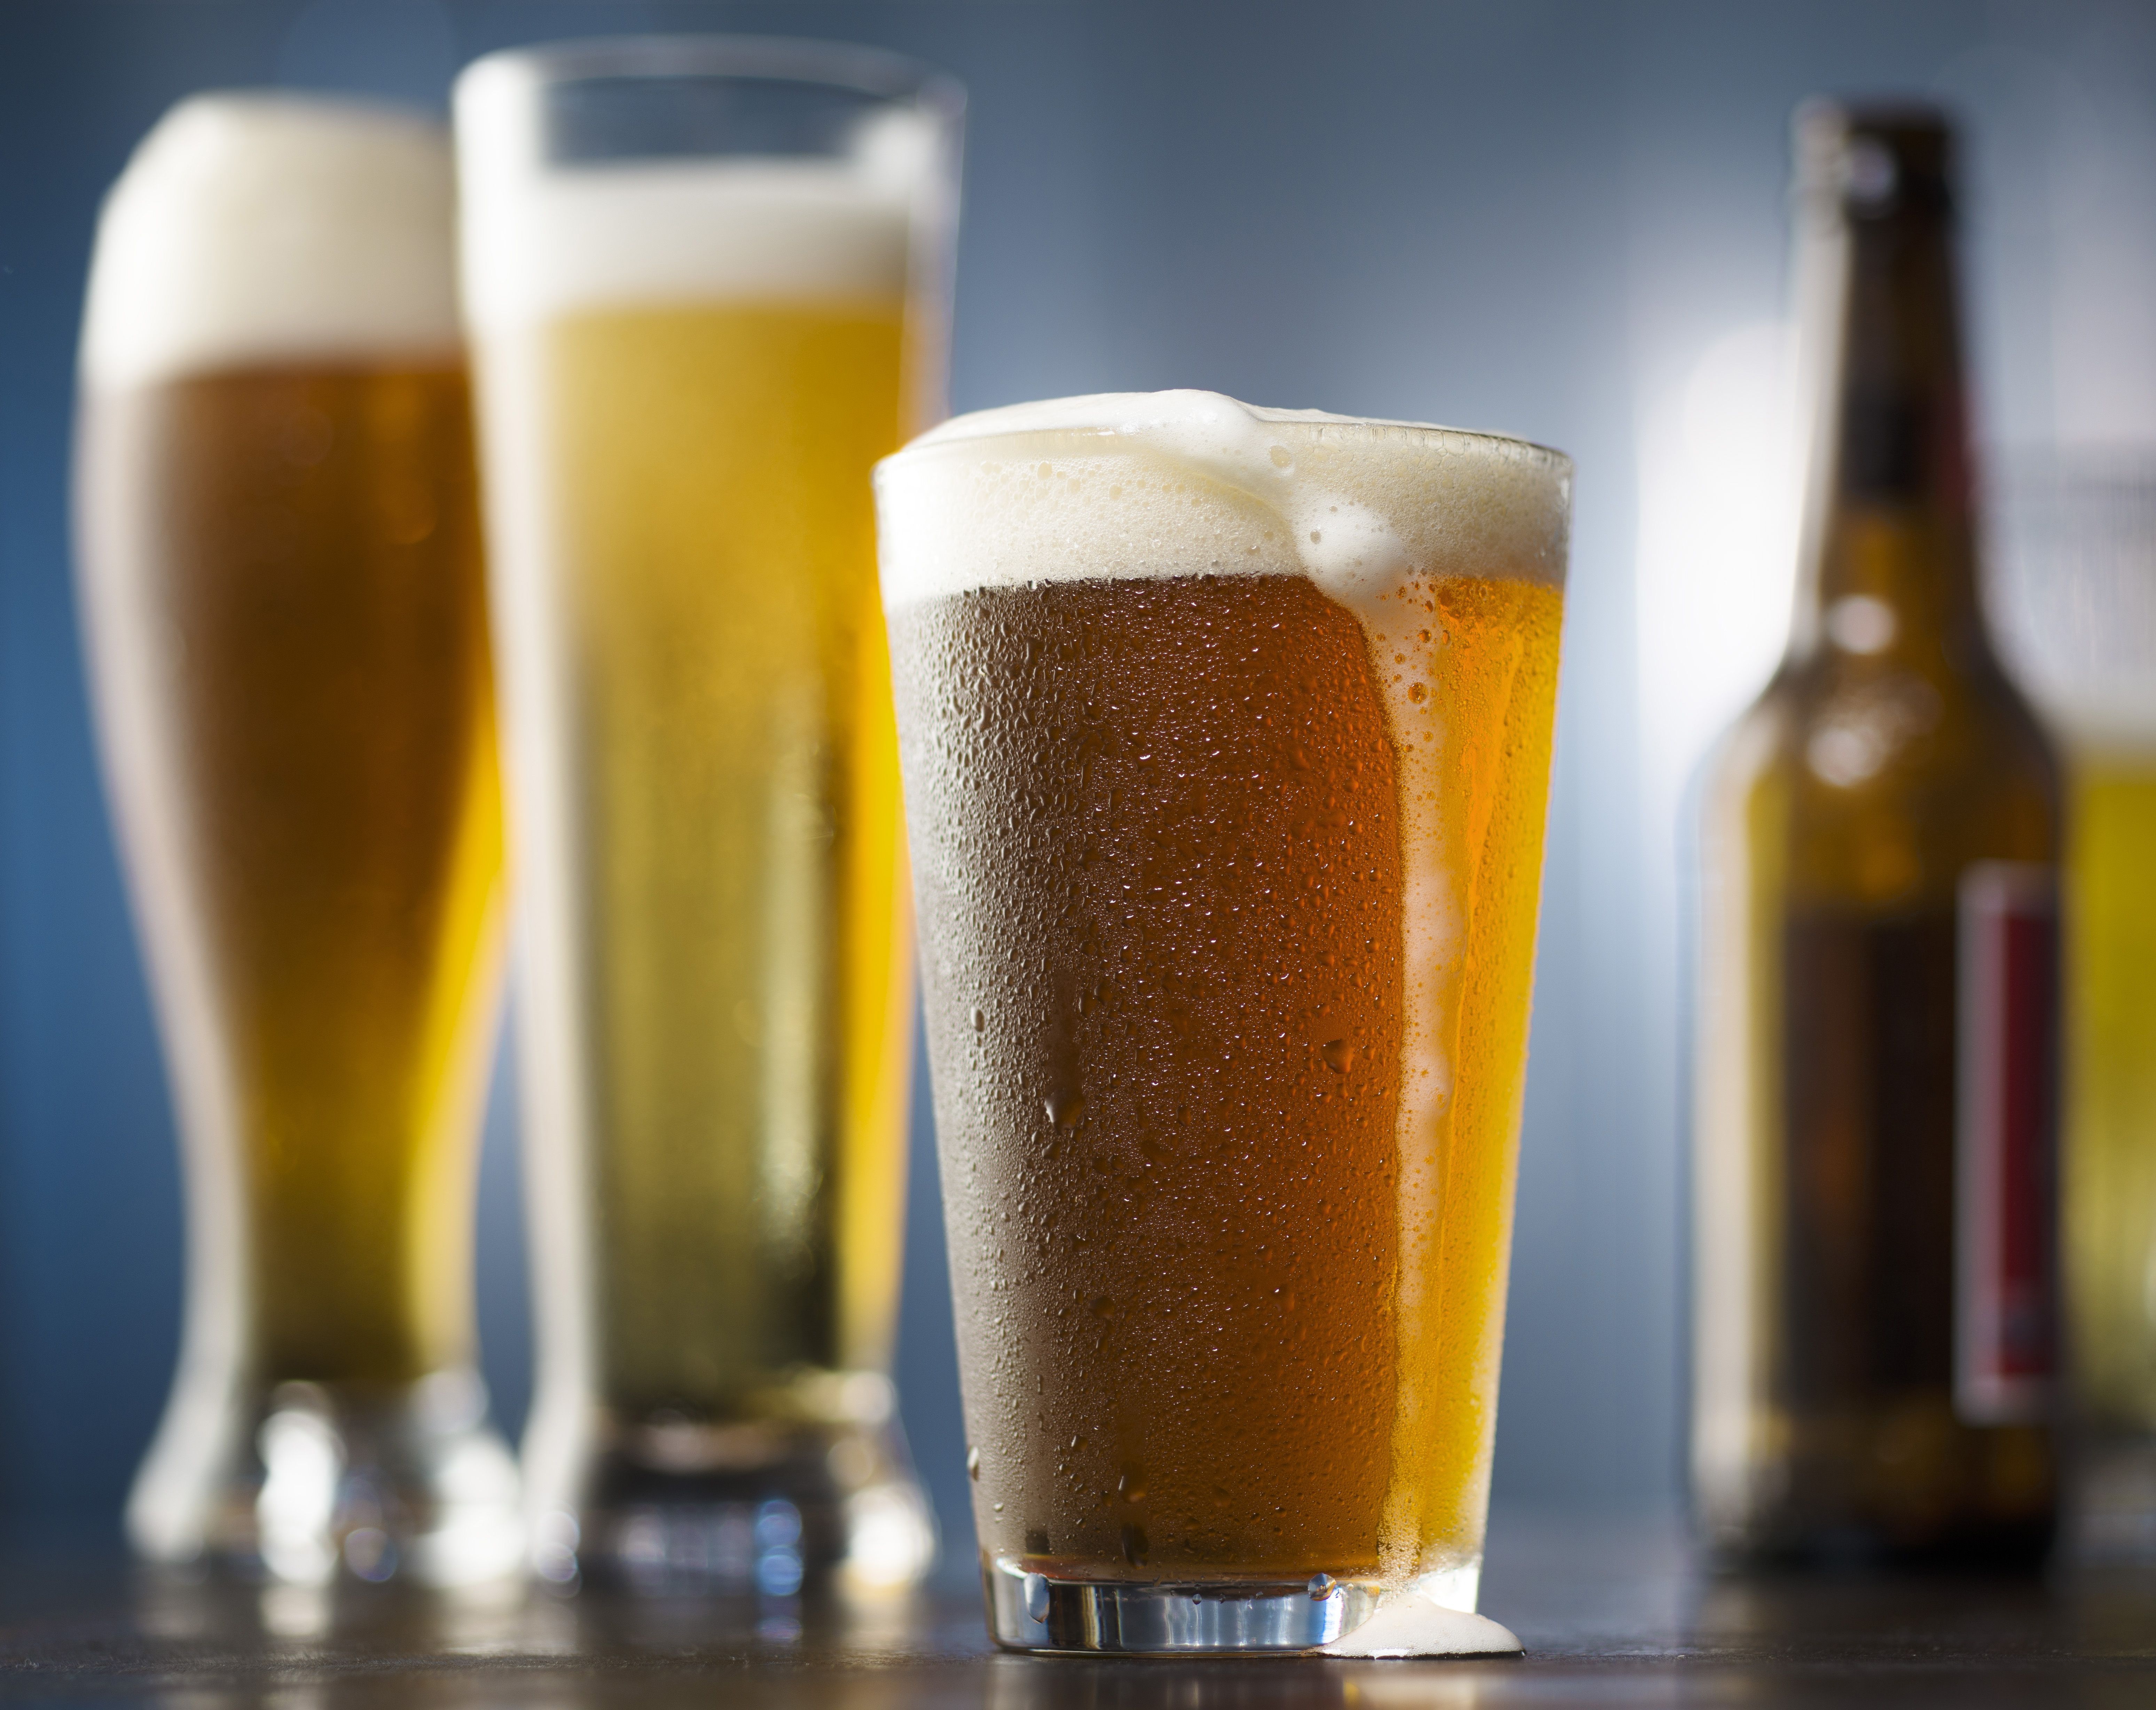 MitosCerveceros La Cerveza es la bebida alcohólica con más calorías